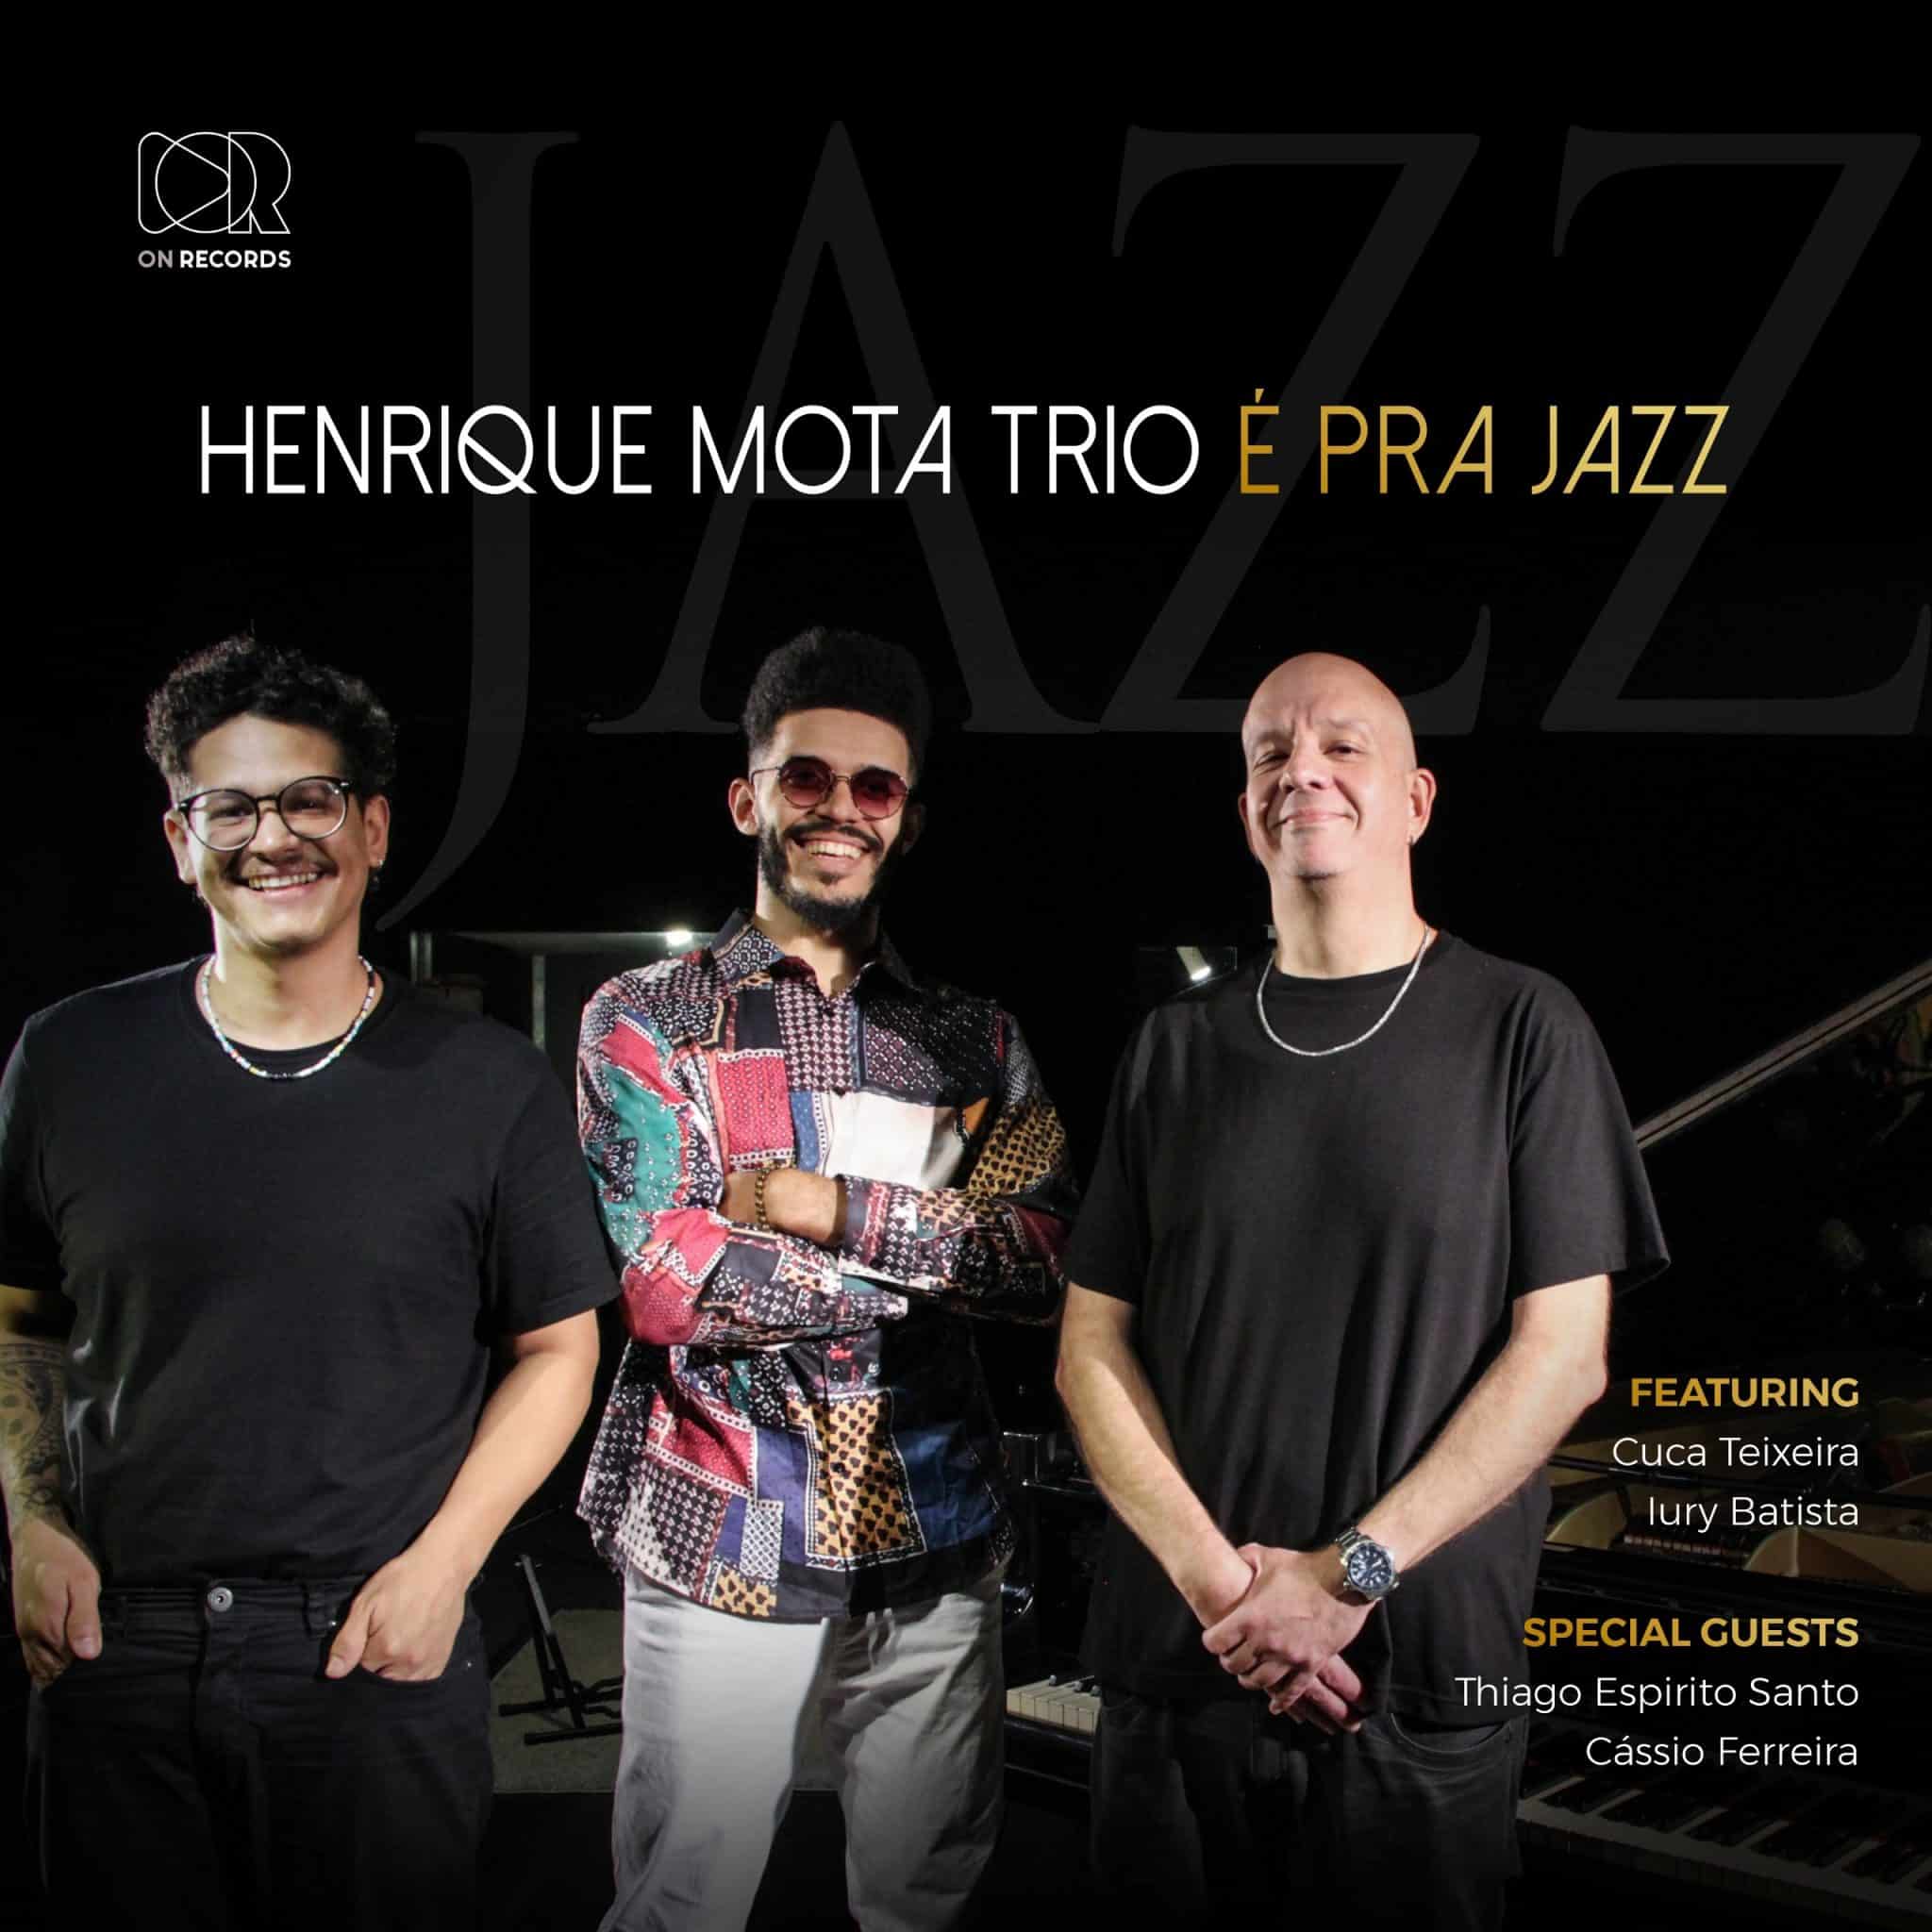 revistaprosaversoearte.com - 'É Pra Jazz', álbum autoral de Henrique Mota Trio